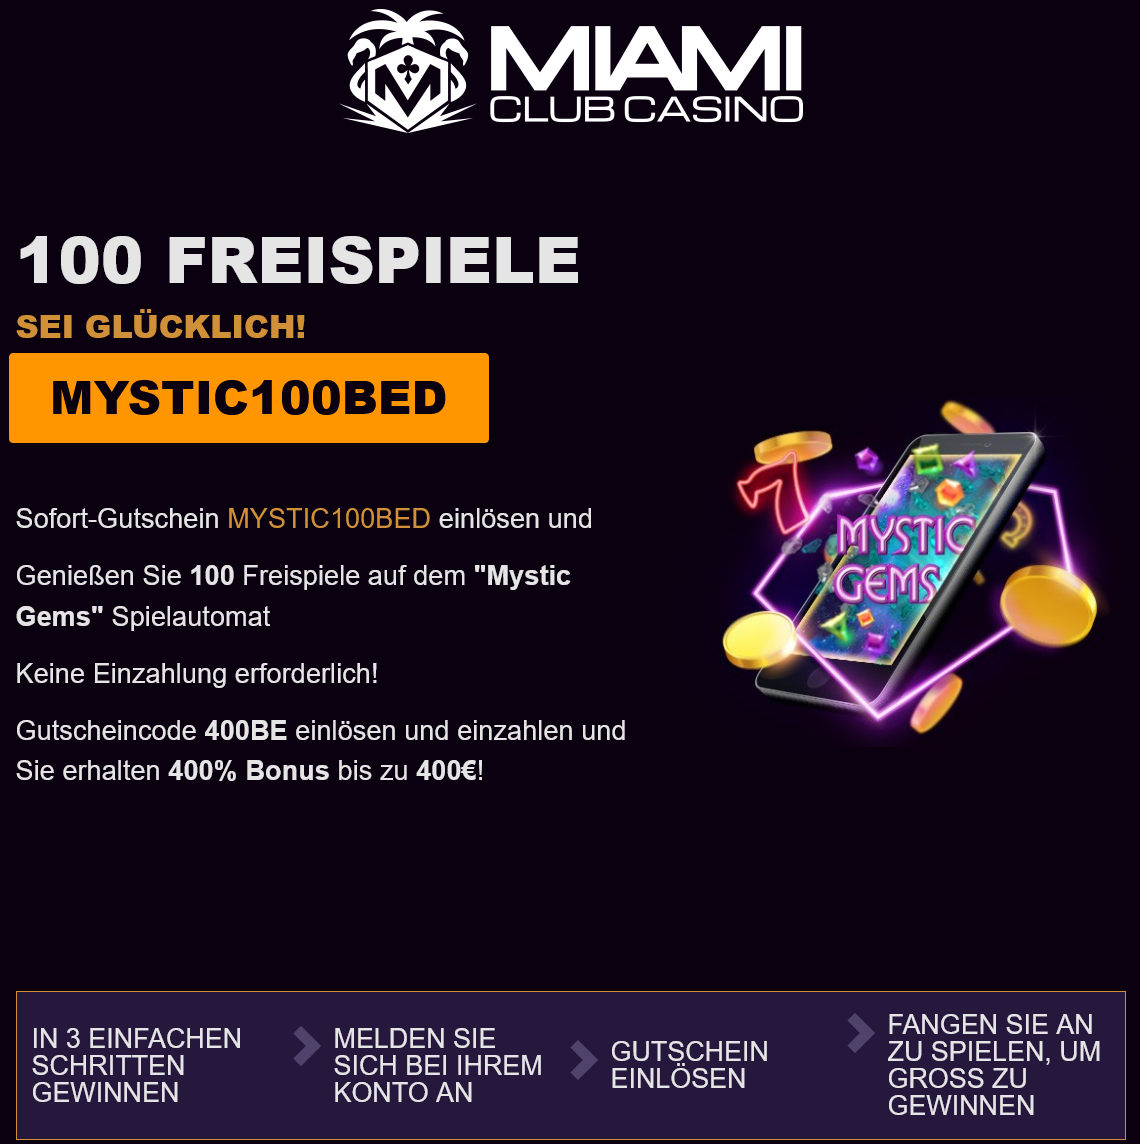 Miami Club Casino 100
                                      Freispiele